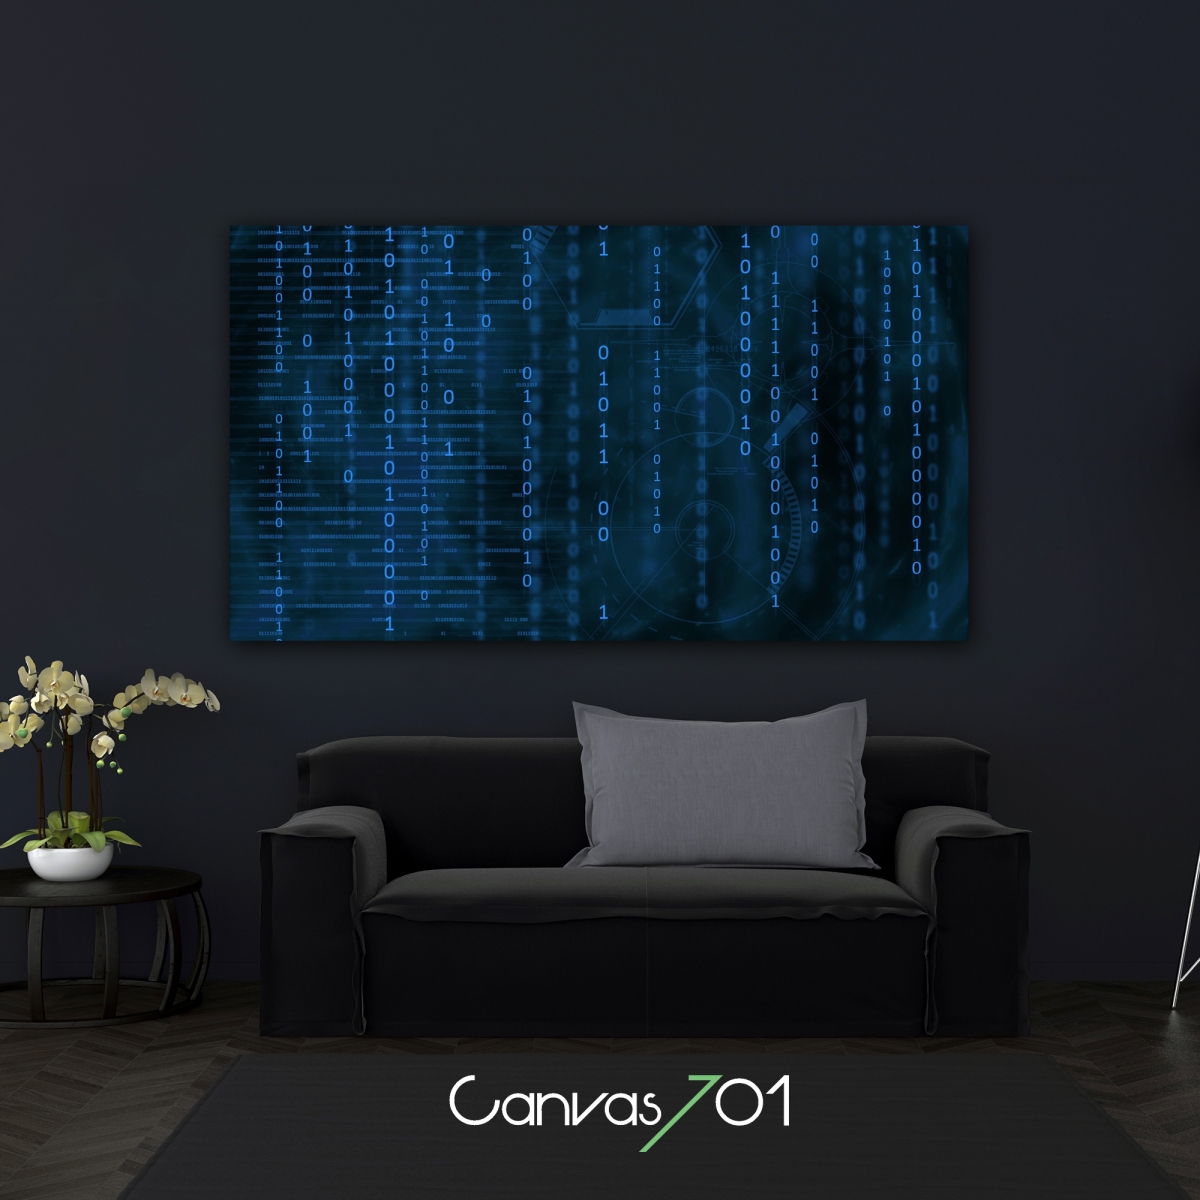 Canvas701 | Programlama Kanvas Tablo